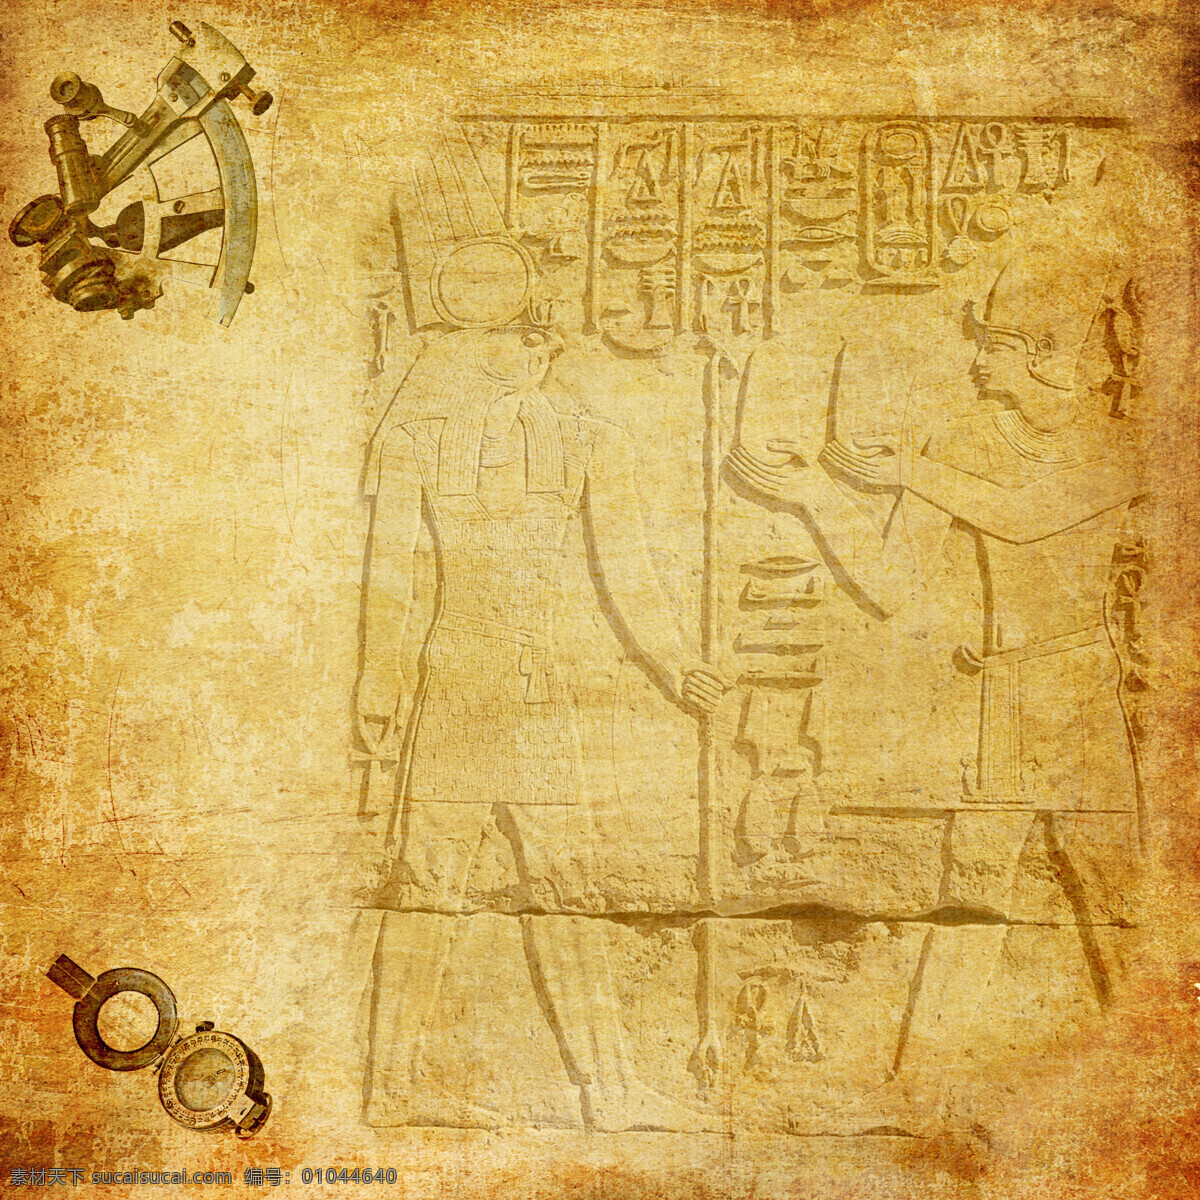 埃及 图案 背景 埃及法老 埃及王后 埃及女人 埃及传统图案 埃及图腾 埃及壁画 古埃及文化 传统图案 文化艺术